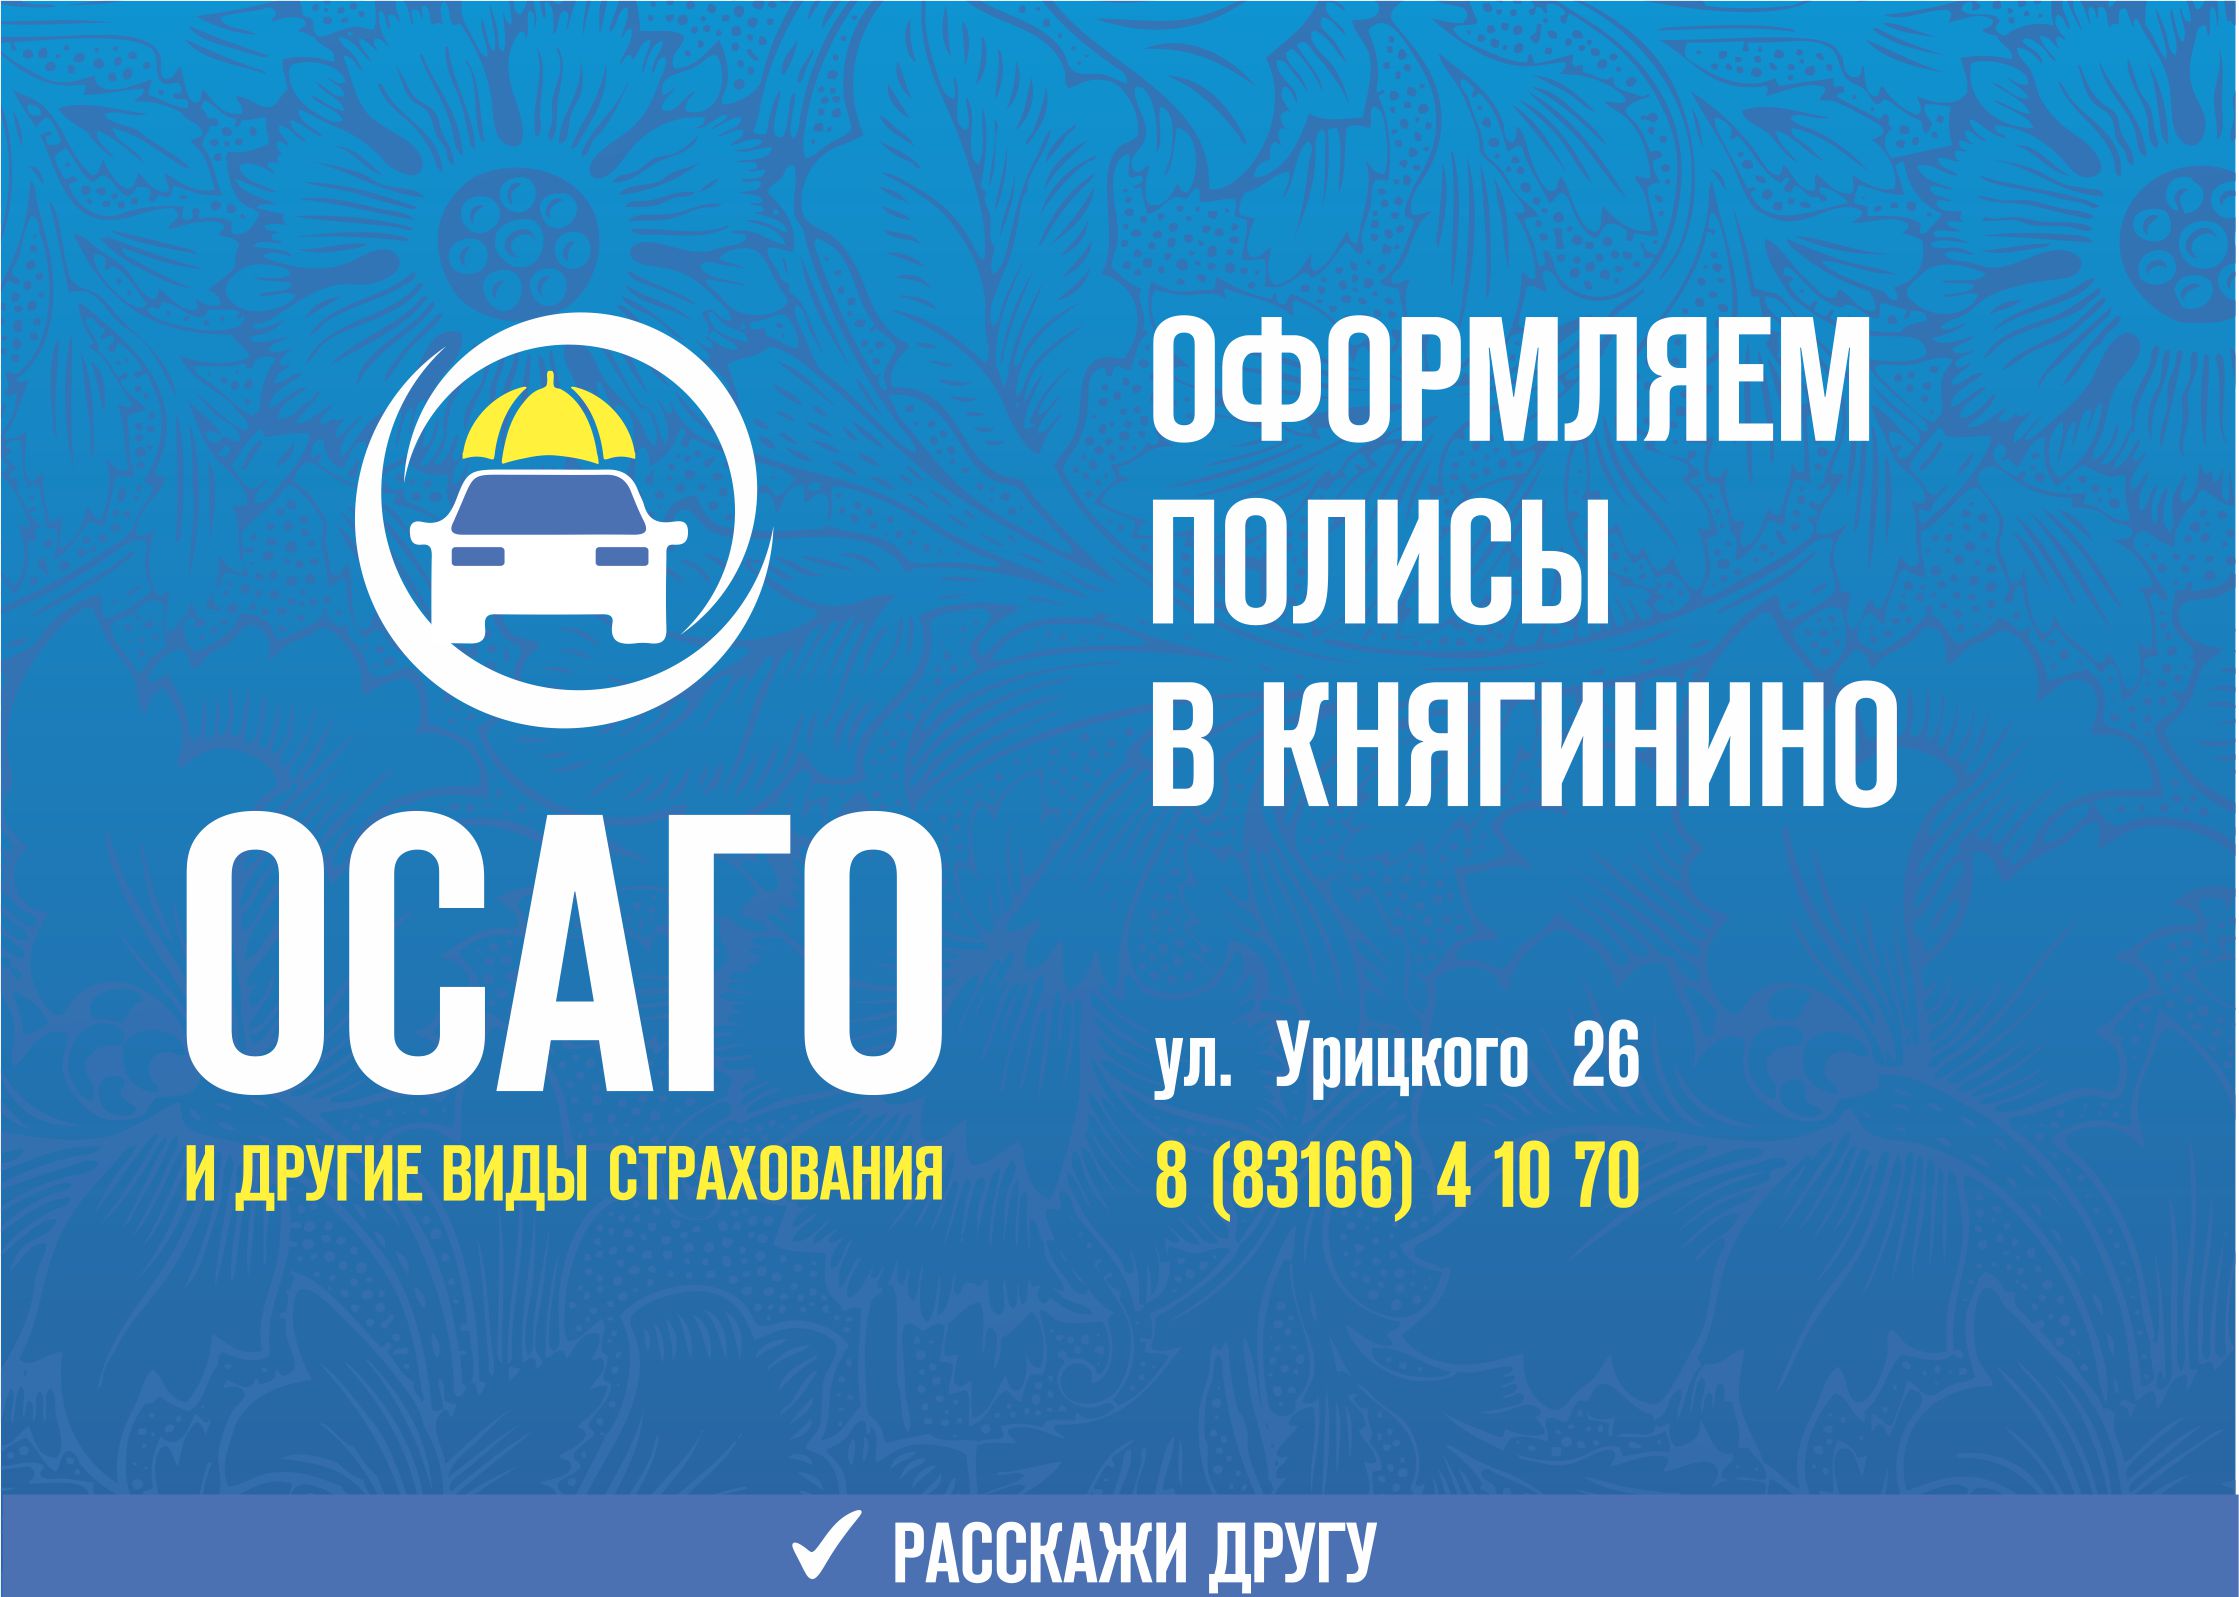 Оформляем полисы ОСАГО в Княгинино для автовладельцев района и Большого Мурашкино. Можно застраховать любой вид транспорта в нашем офисе.